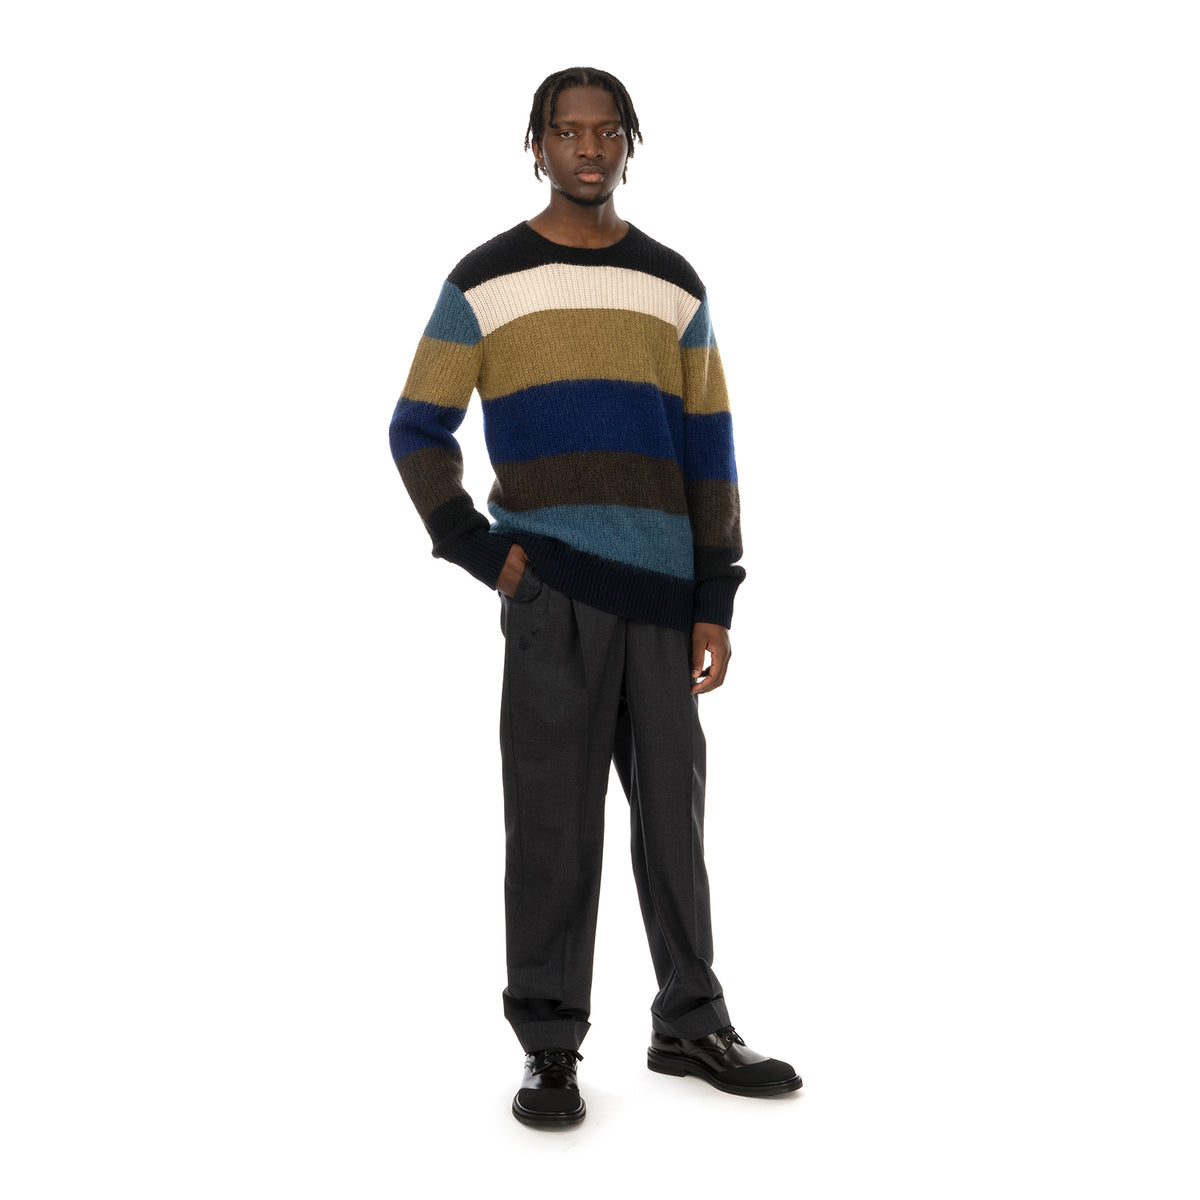 Marni | Roundneck Sweater Multi Stripe - Concrete